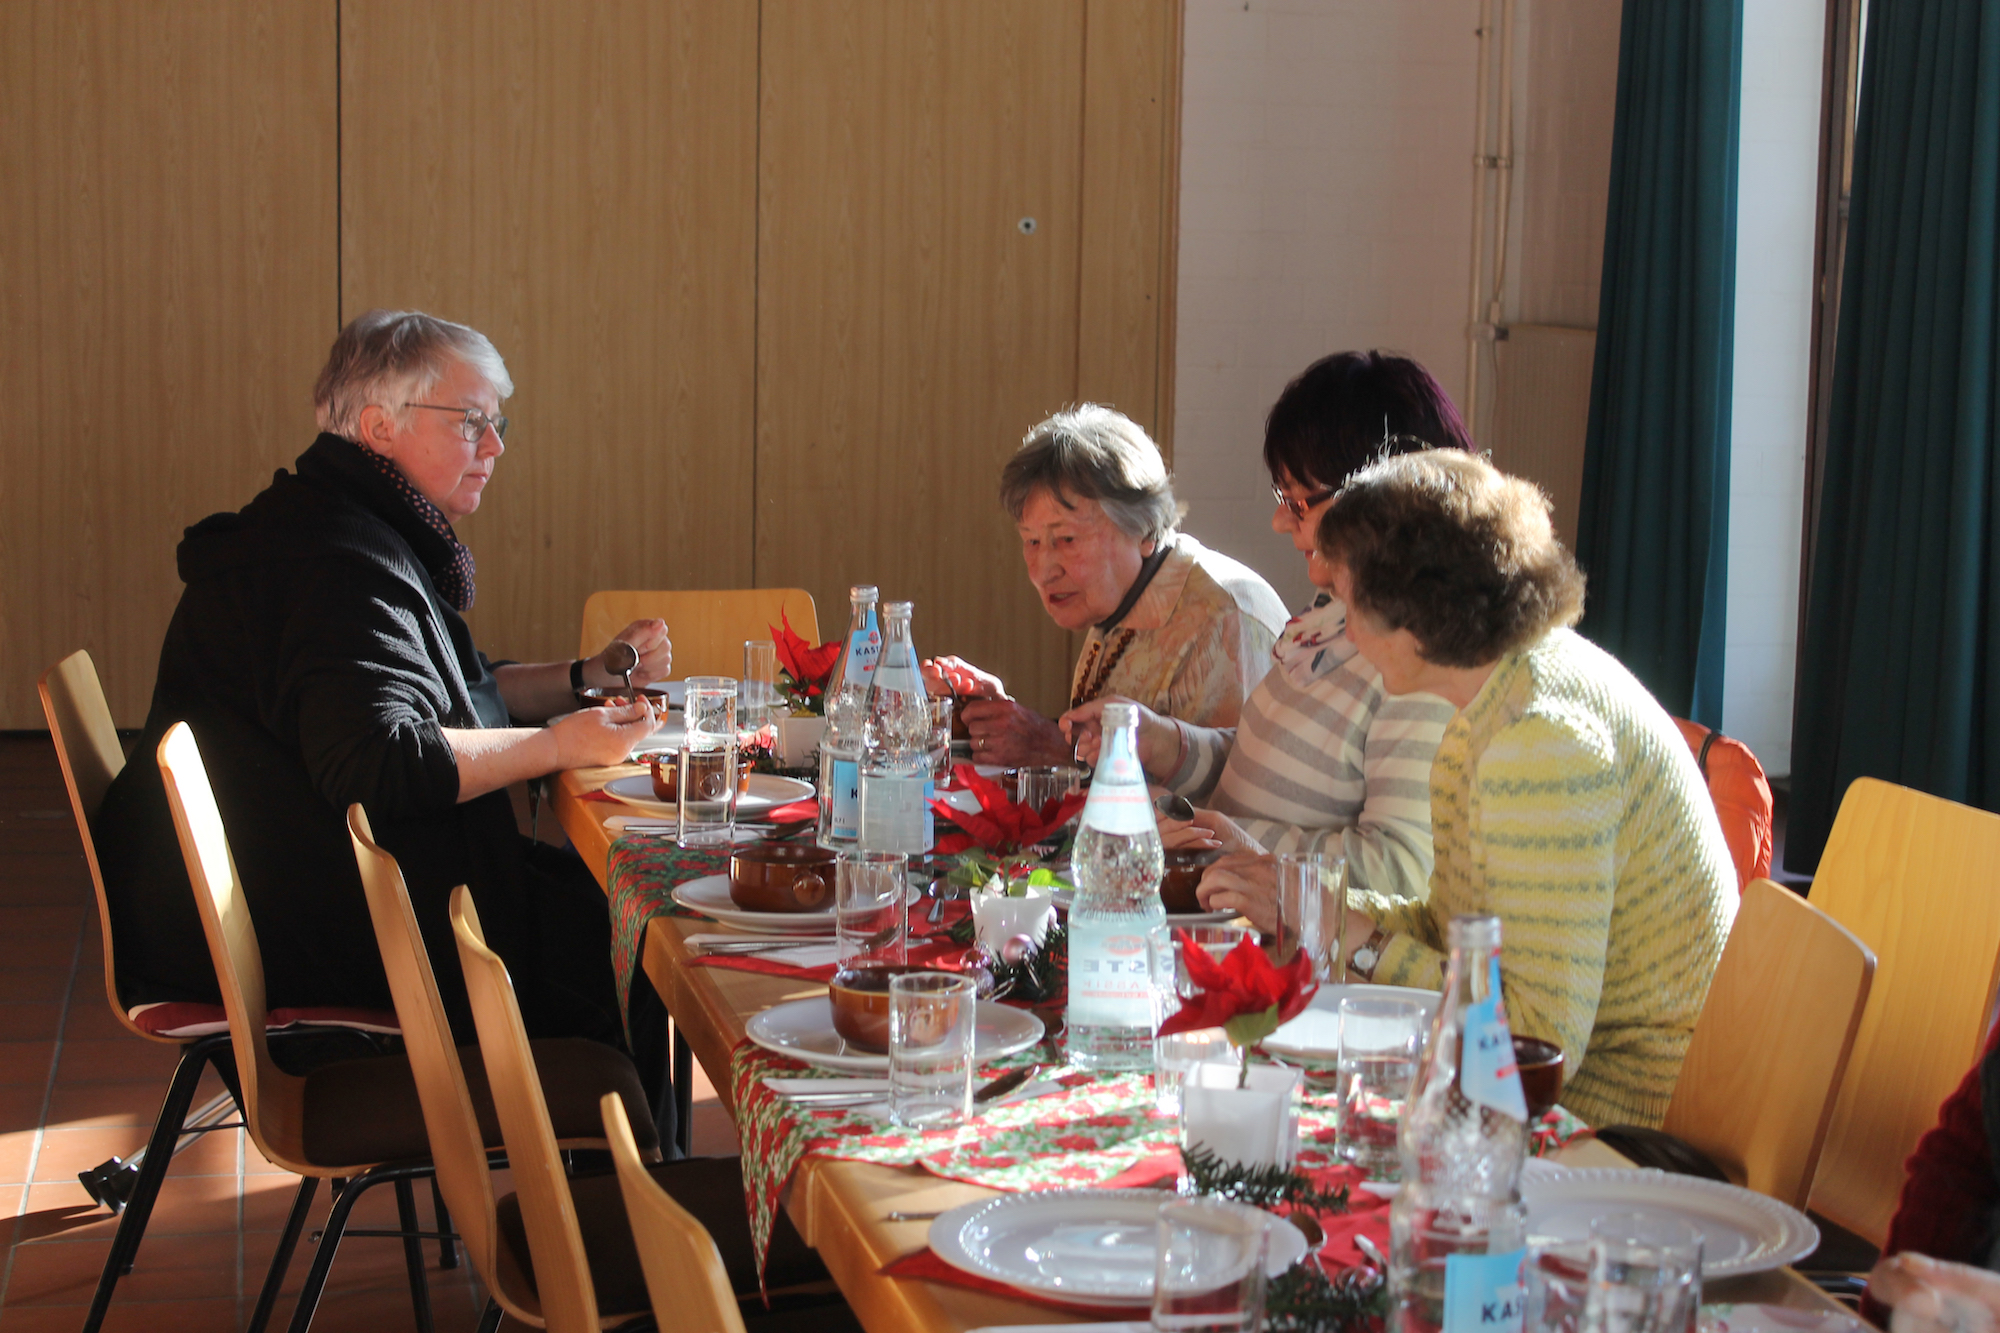 Tischgemeinschaft pflegen gehört mit zu den urchristlichen Traditionen. In Krefeld wird sie als „Angebot“ gelebt. (c) Kathrin Albrecht